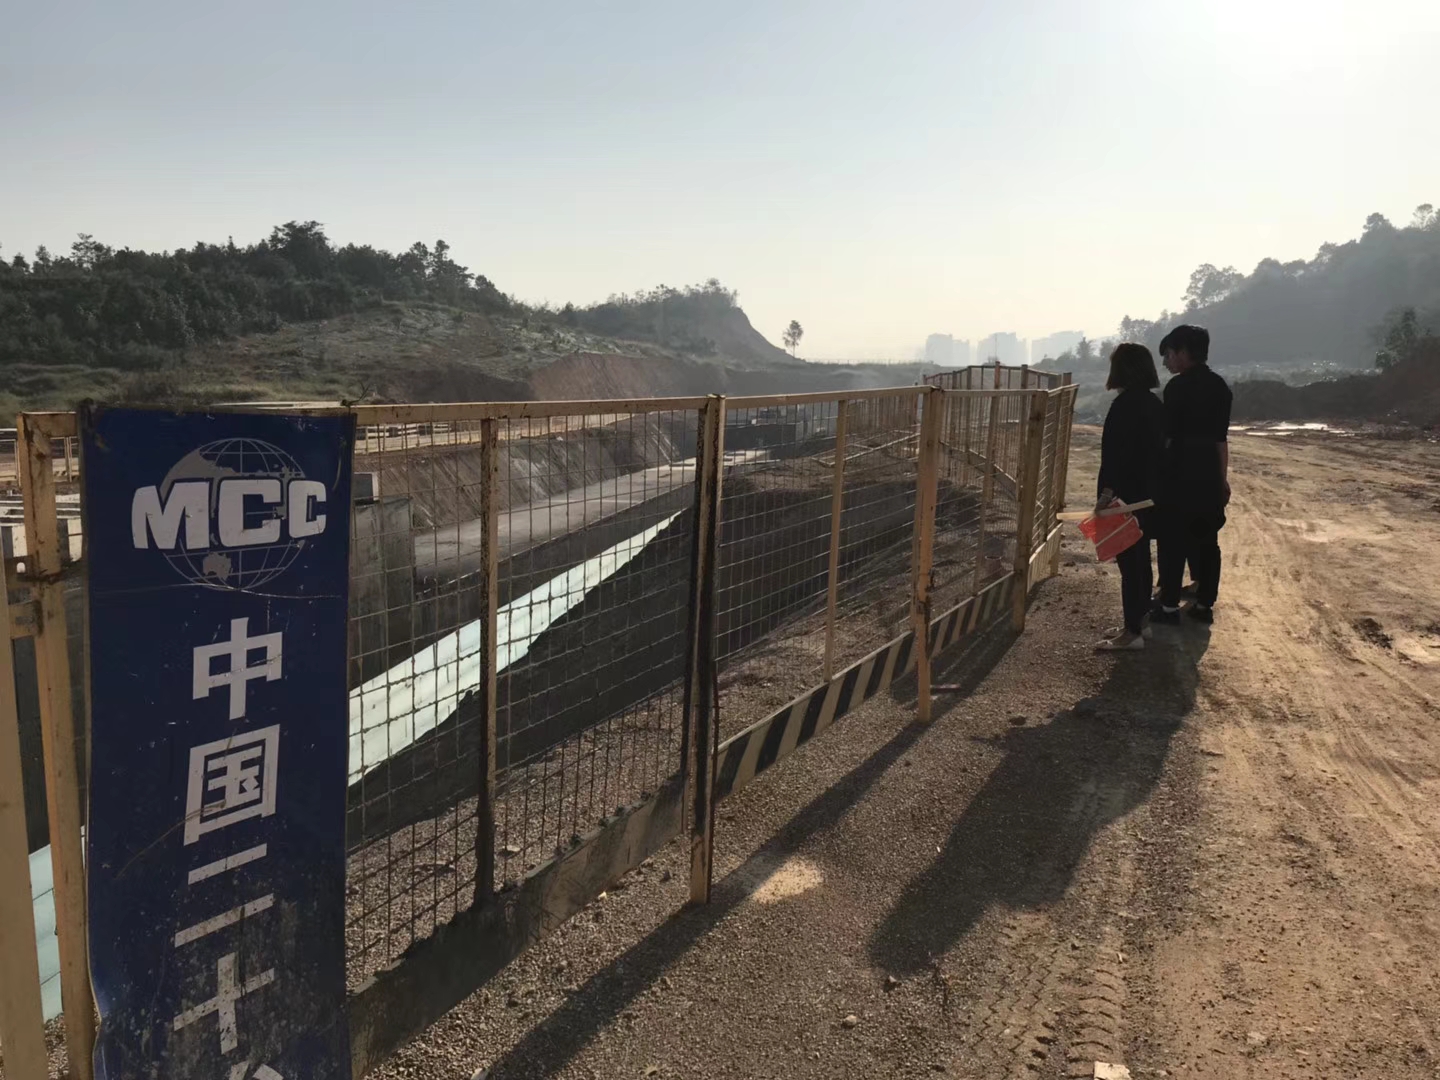 广州艺佰涂科技有限公司 桥面防水涂料 溶剂型